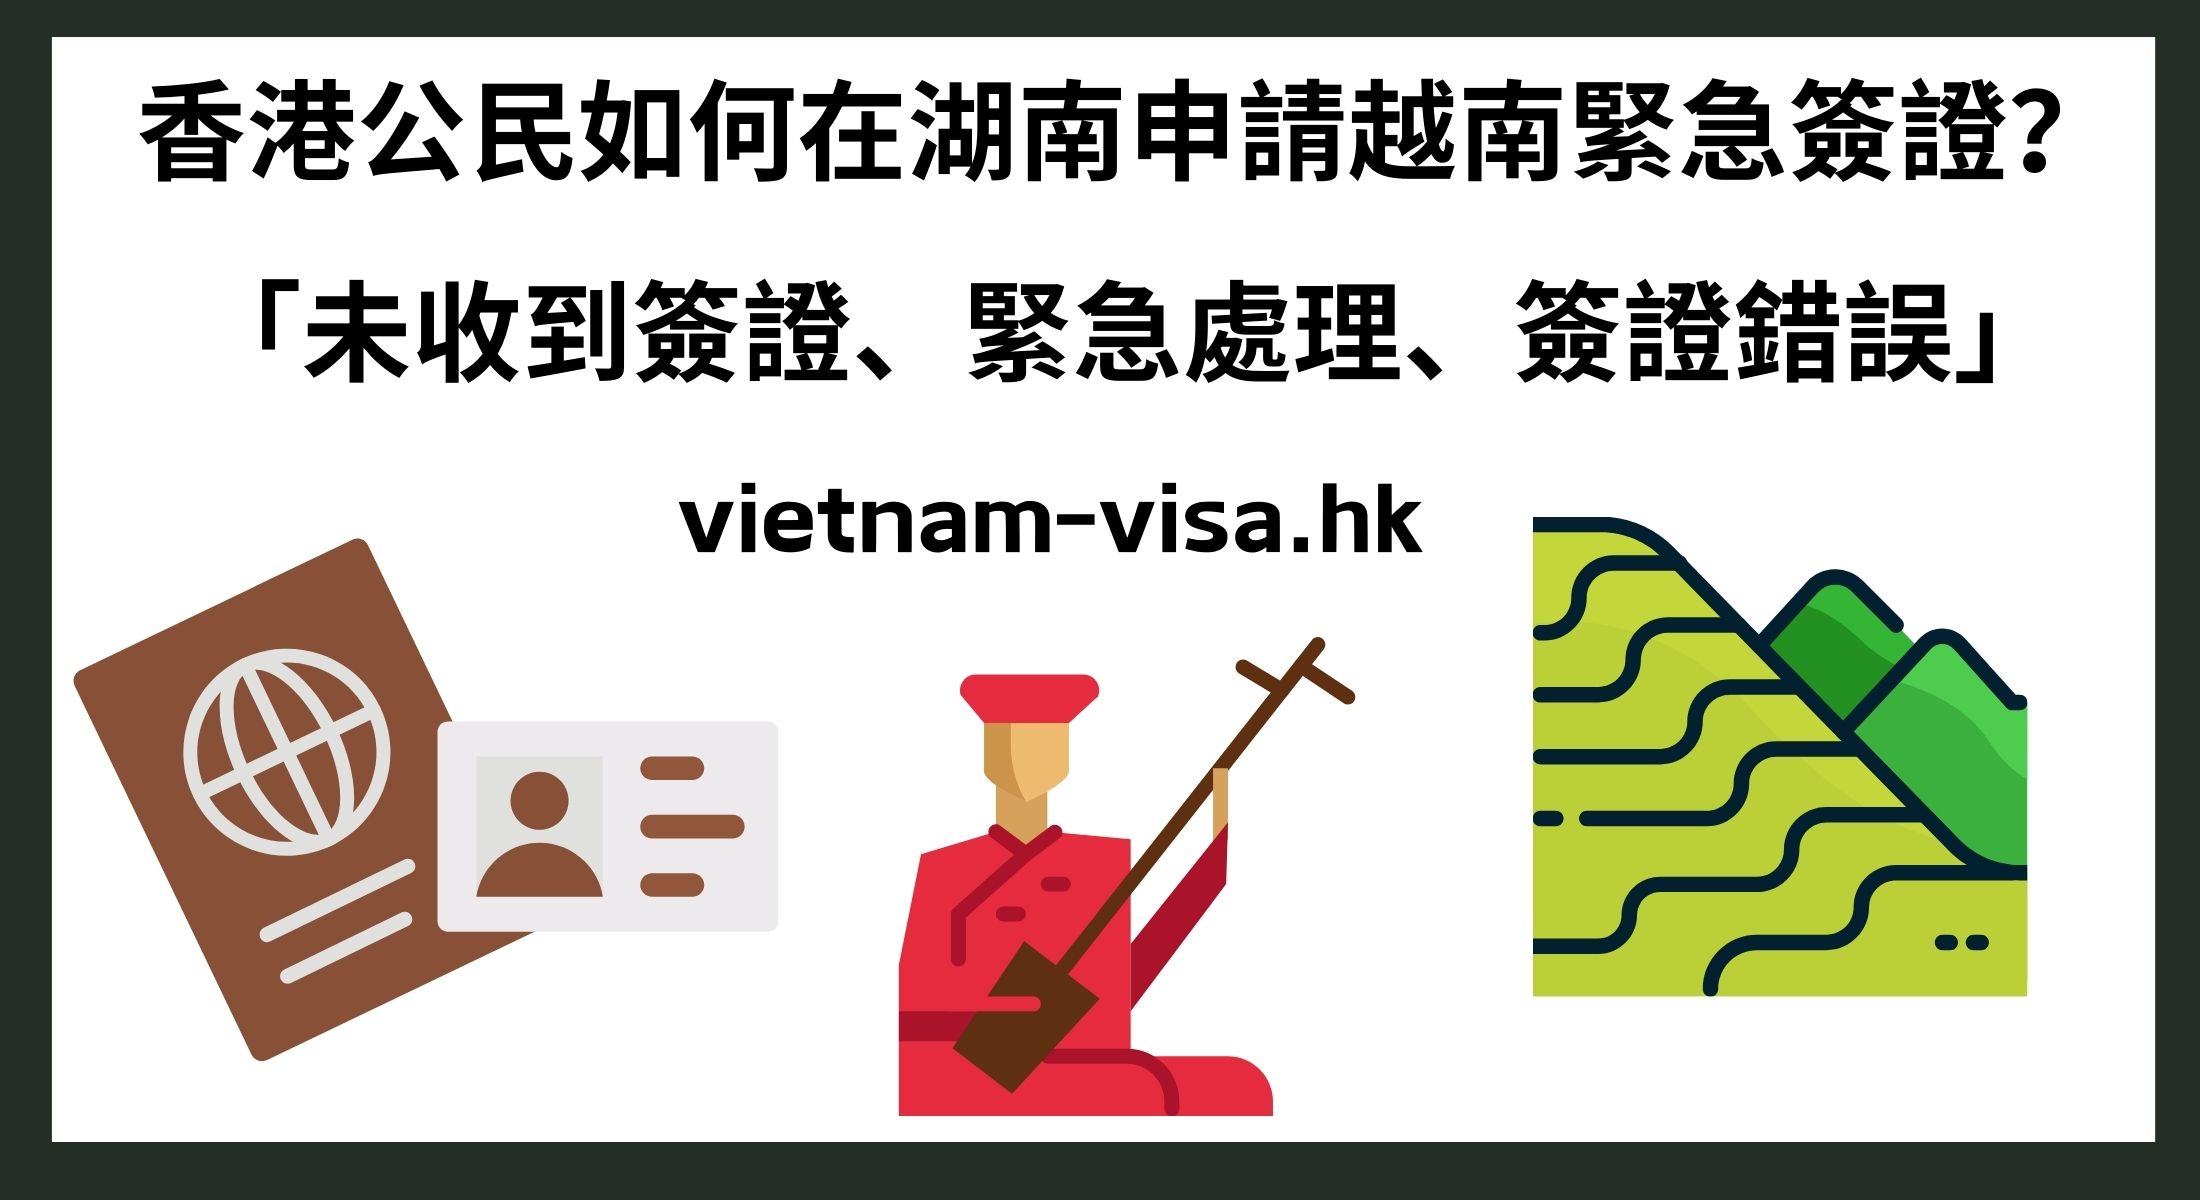 香港公民如何在湖南申請越南緊急簽證？ 「未收到簽證、緊急處理、簽證錯誤」